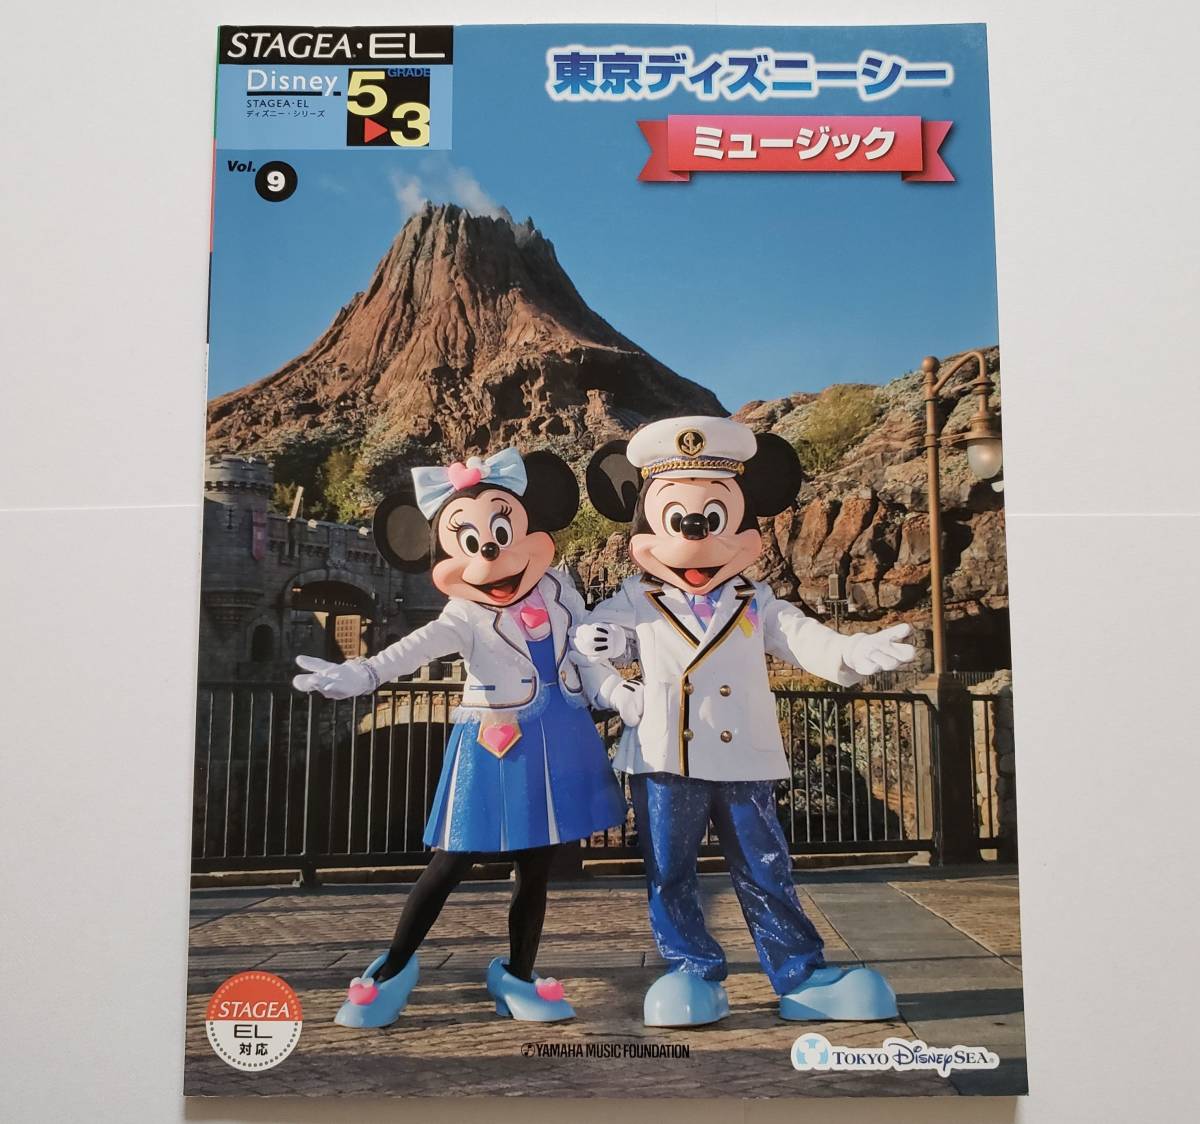 ELECTONE 東京ディズニーシー ミュージック 5-3級 Vol.9 STAGEA・EL ディズニー シー Disney MUSIC ステージア 楽譜 エレクトーン スコア